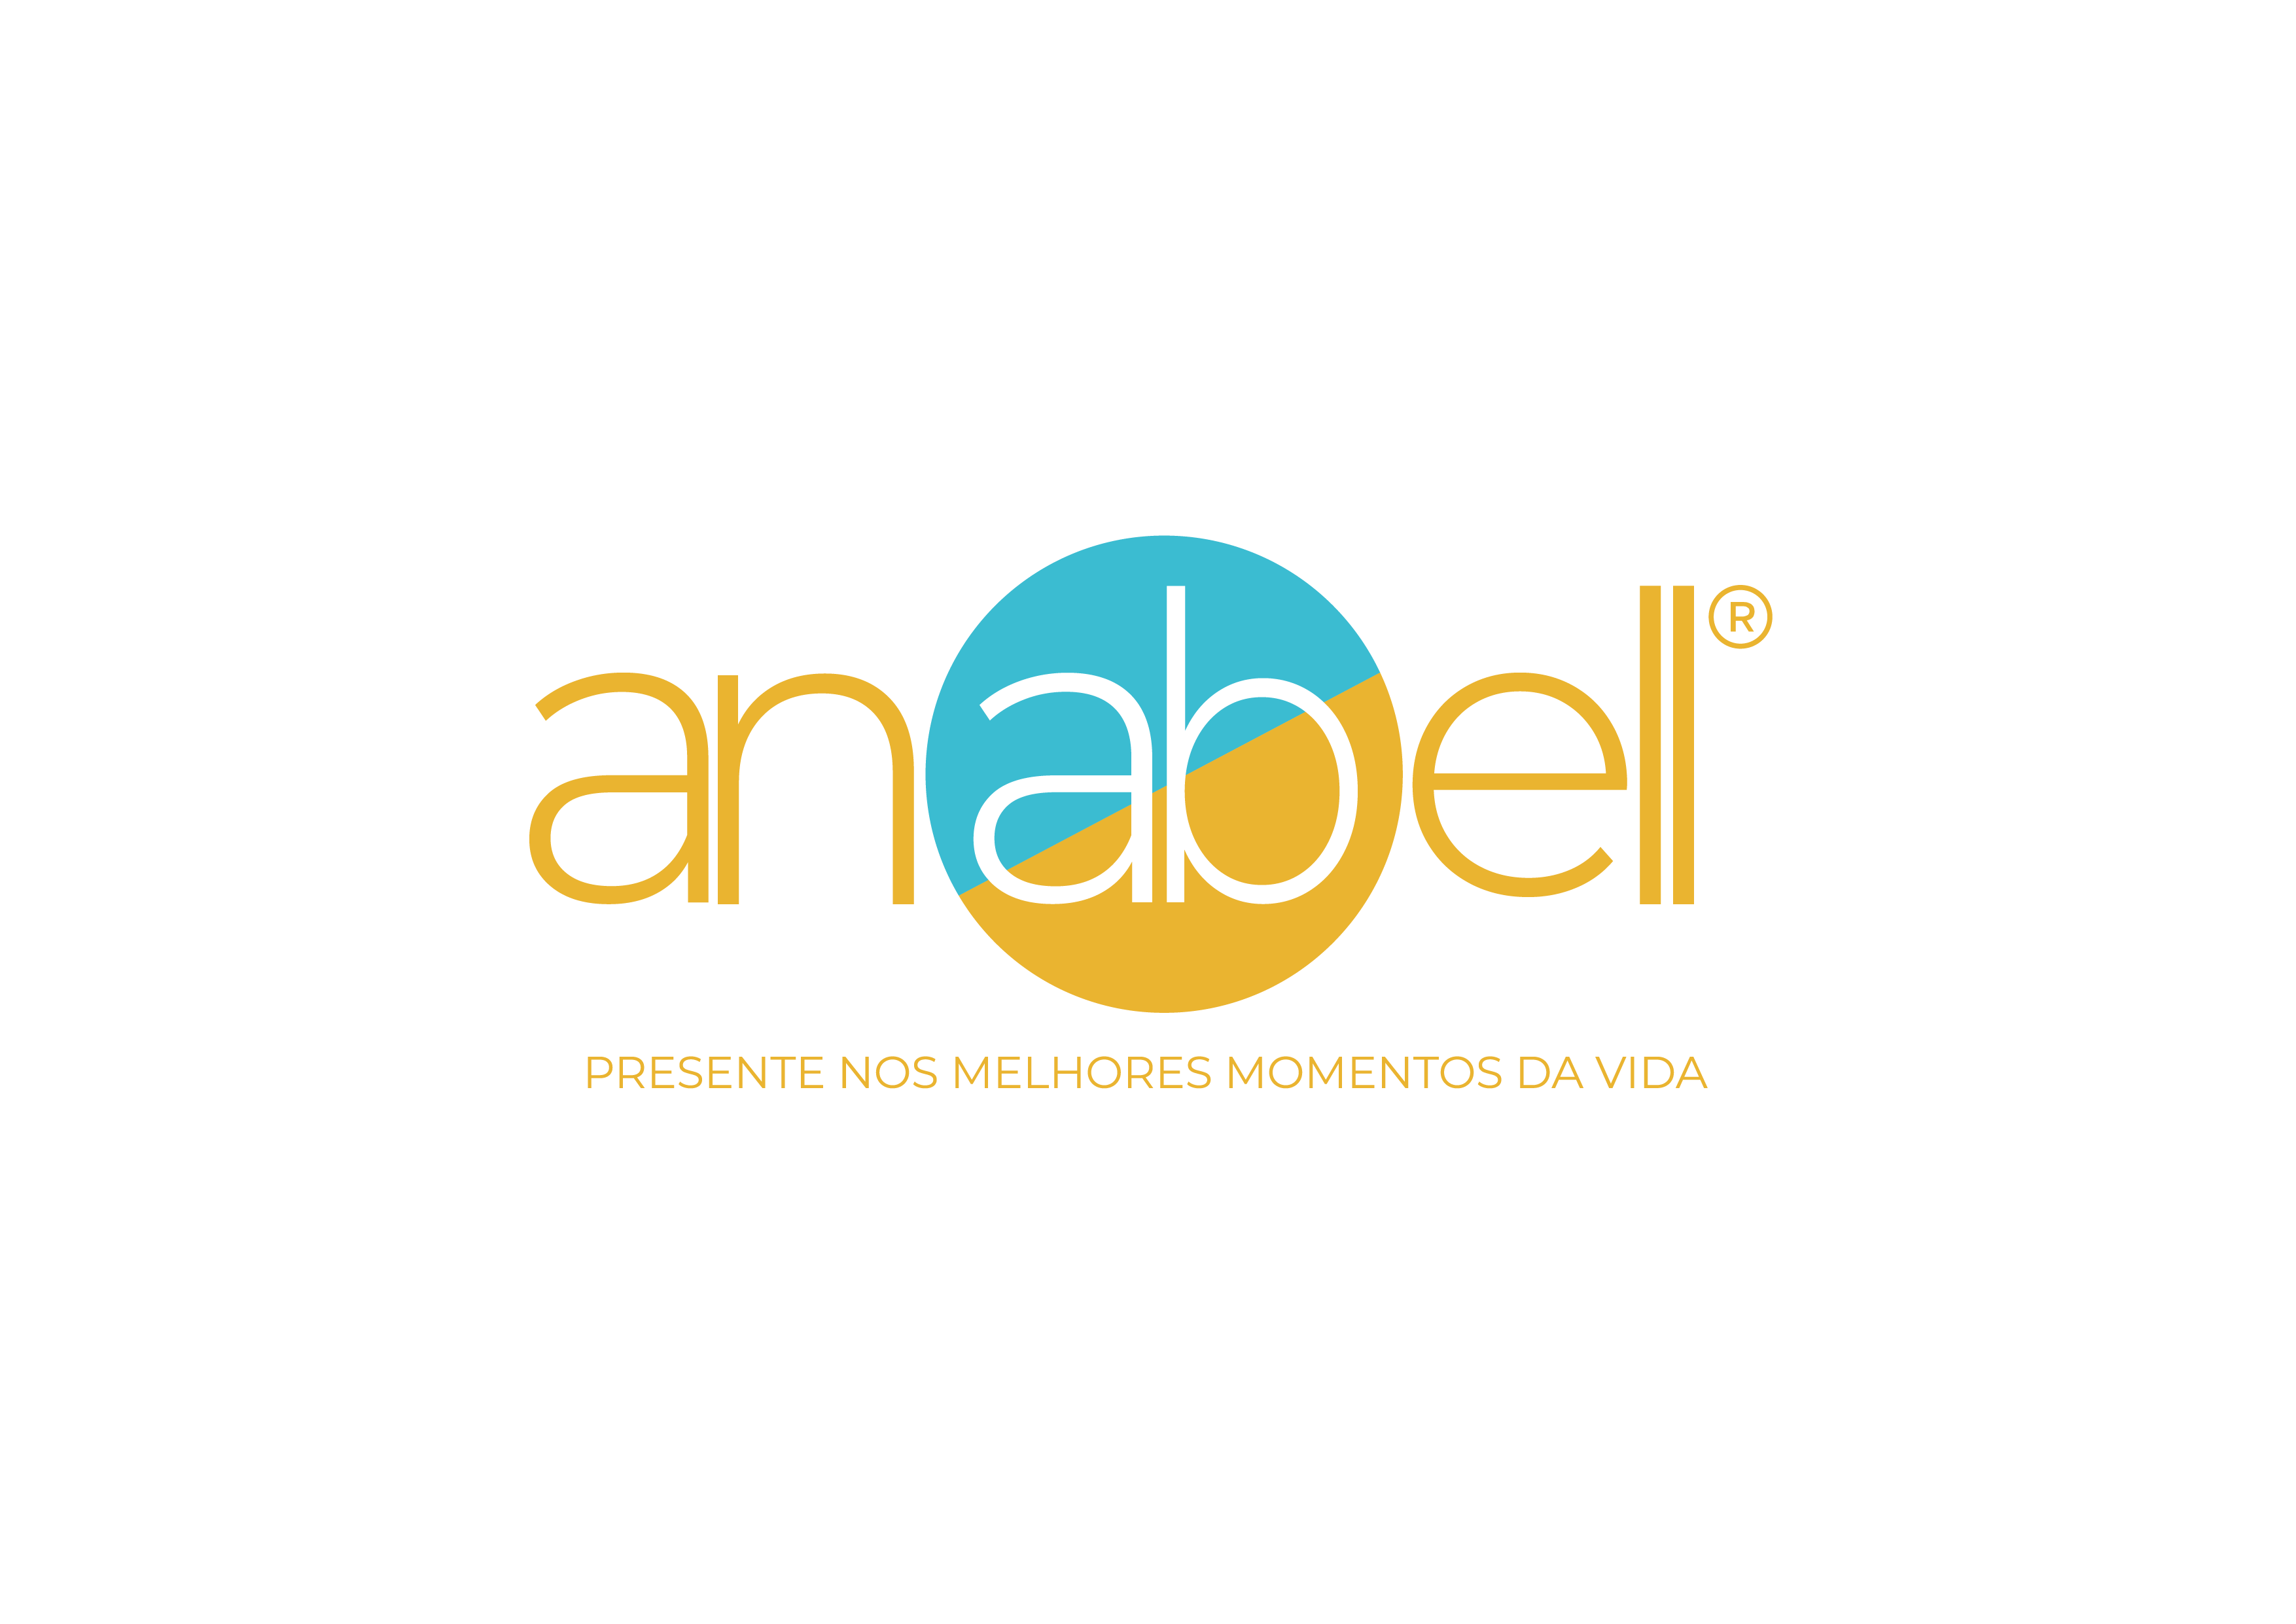 Conheça um pouco sobre a história da Anabell: a mais tradicional fabricante de coolers térmicos do Brasil